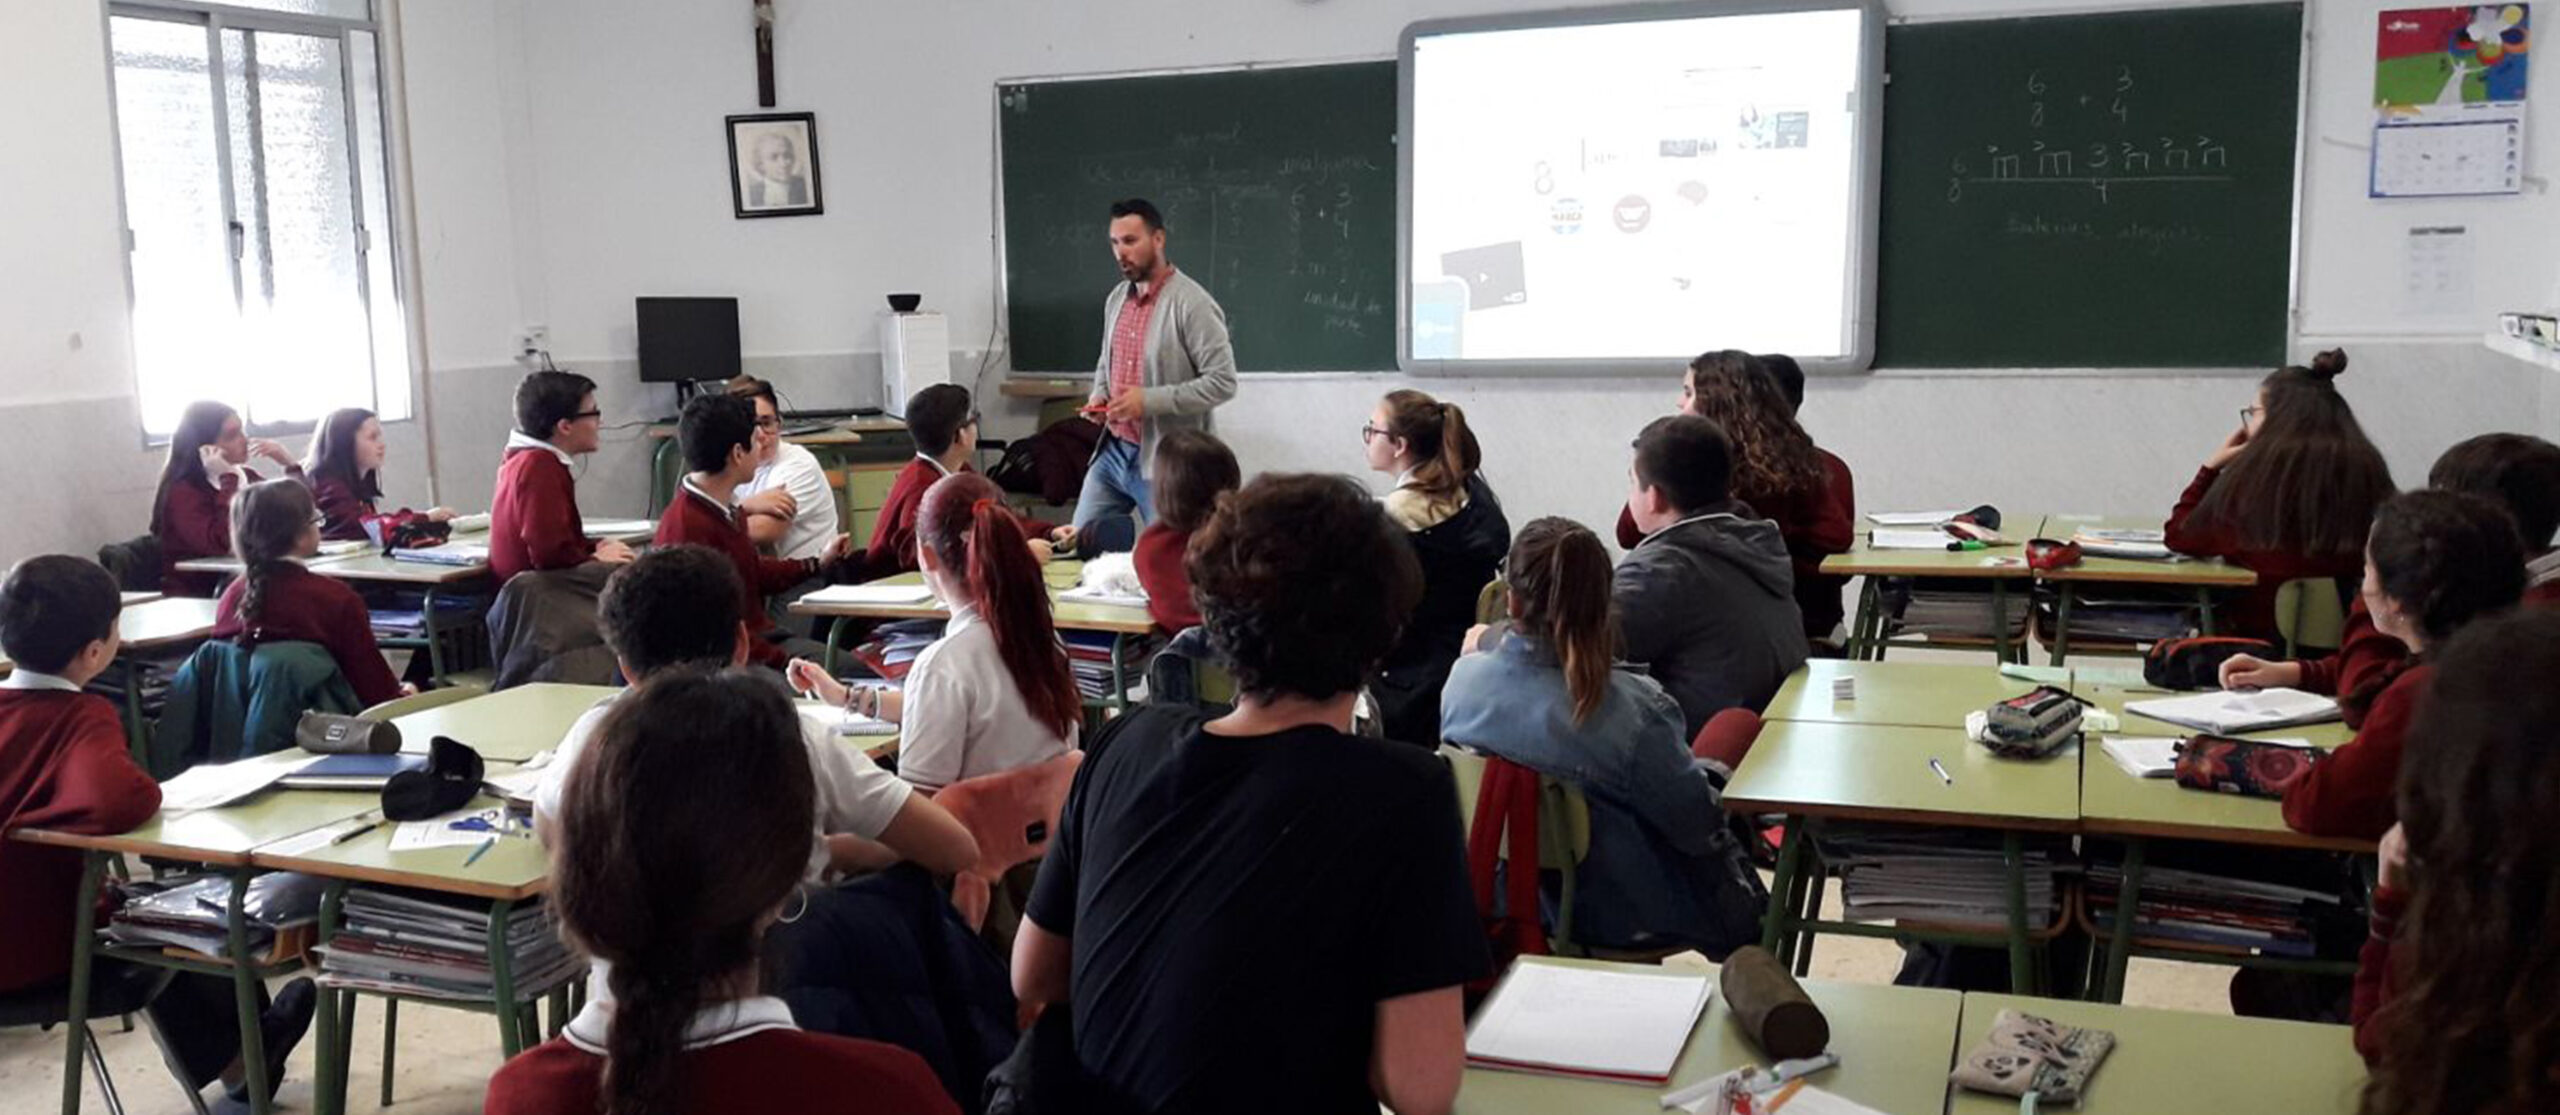 El proyecto Periodismo en las aulas analiza con los escolares de la provincia el fenómeno de la información sensacionalista